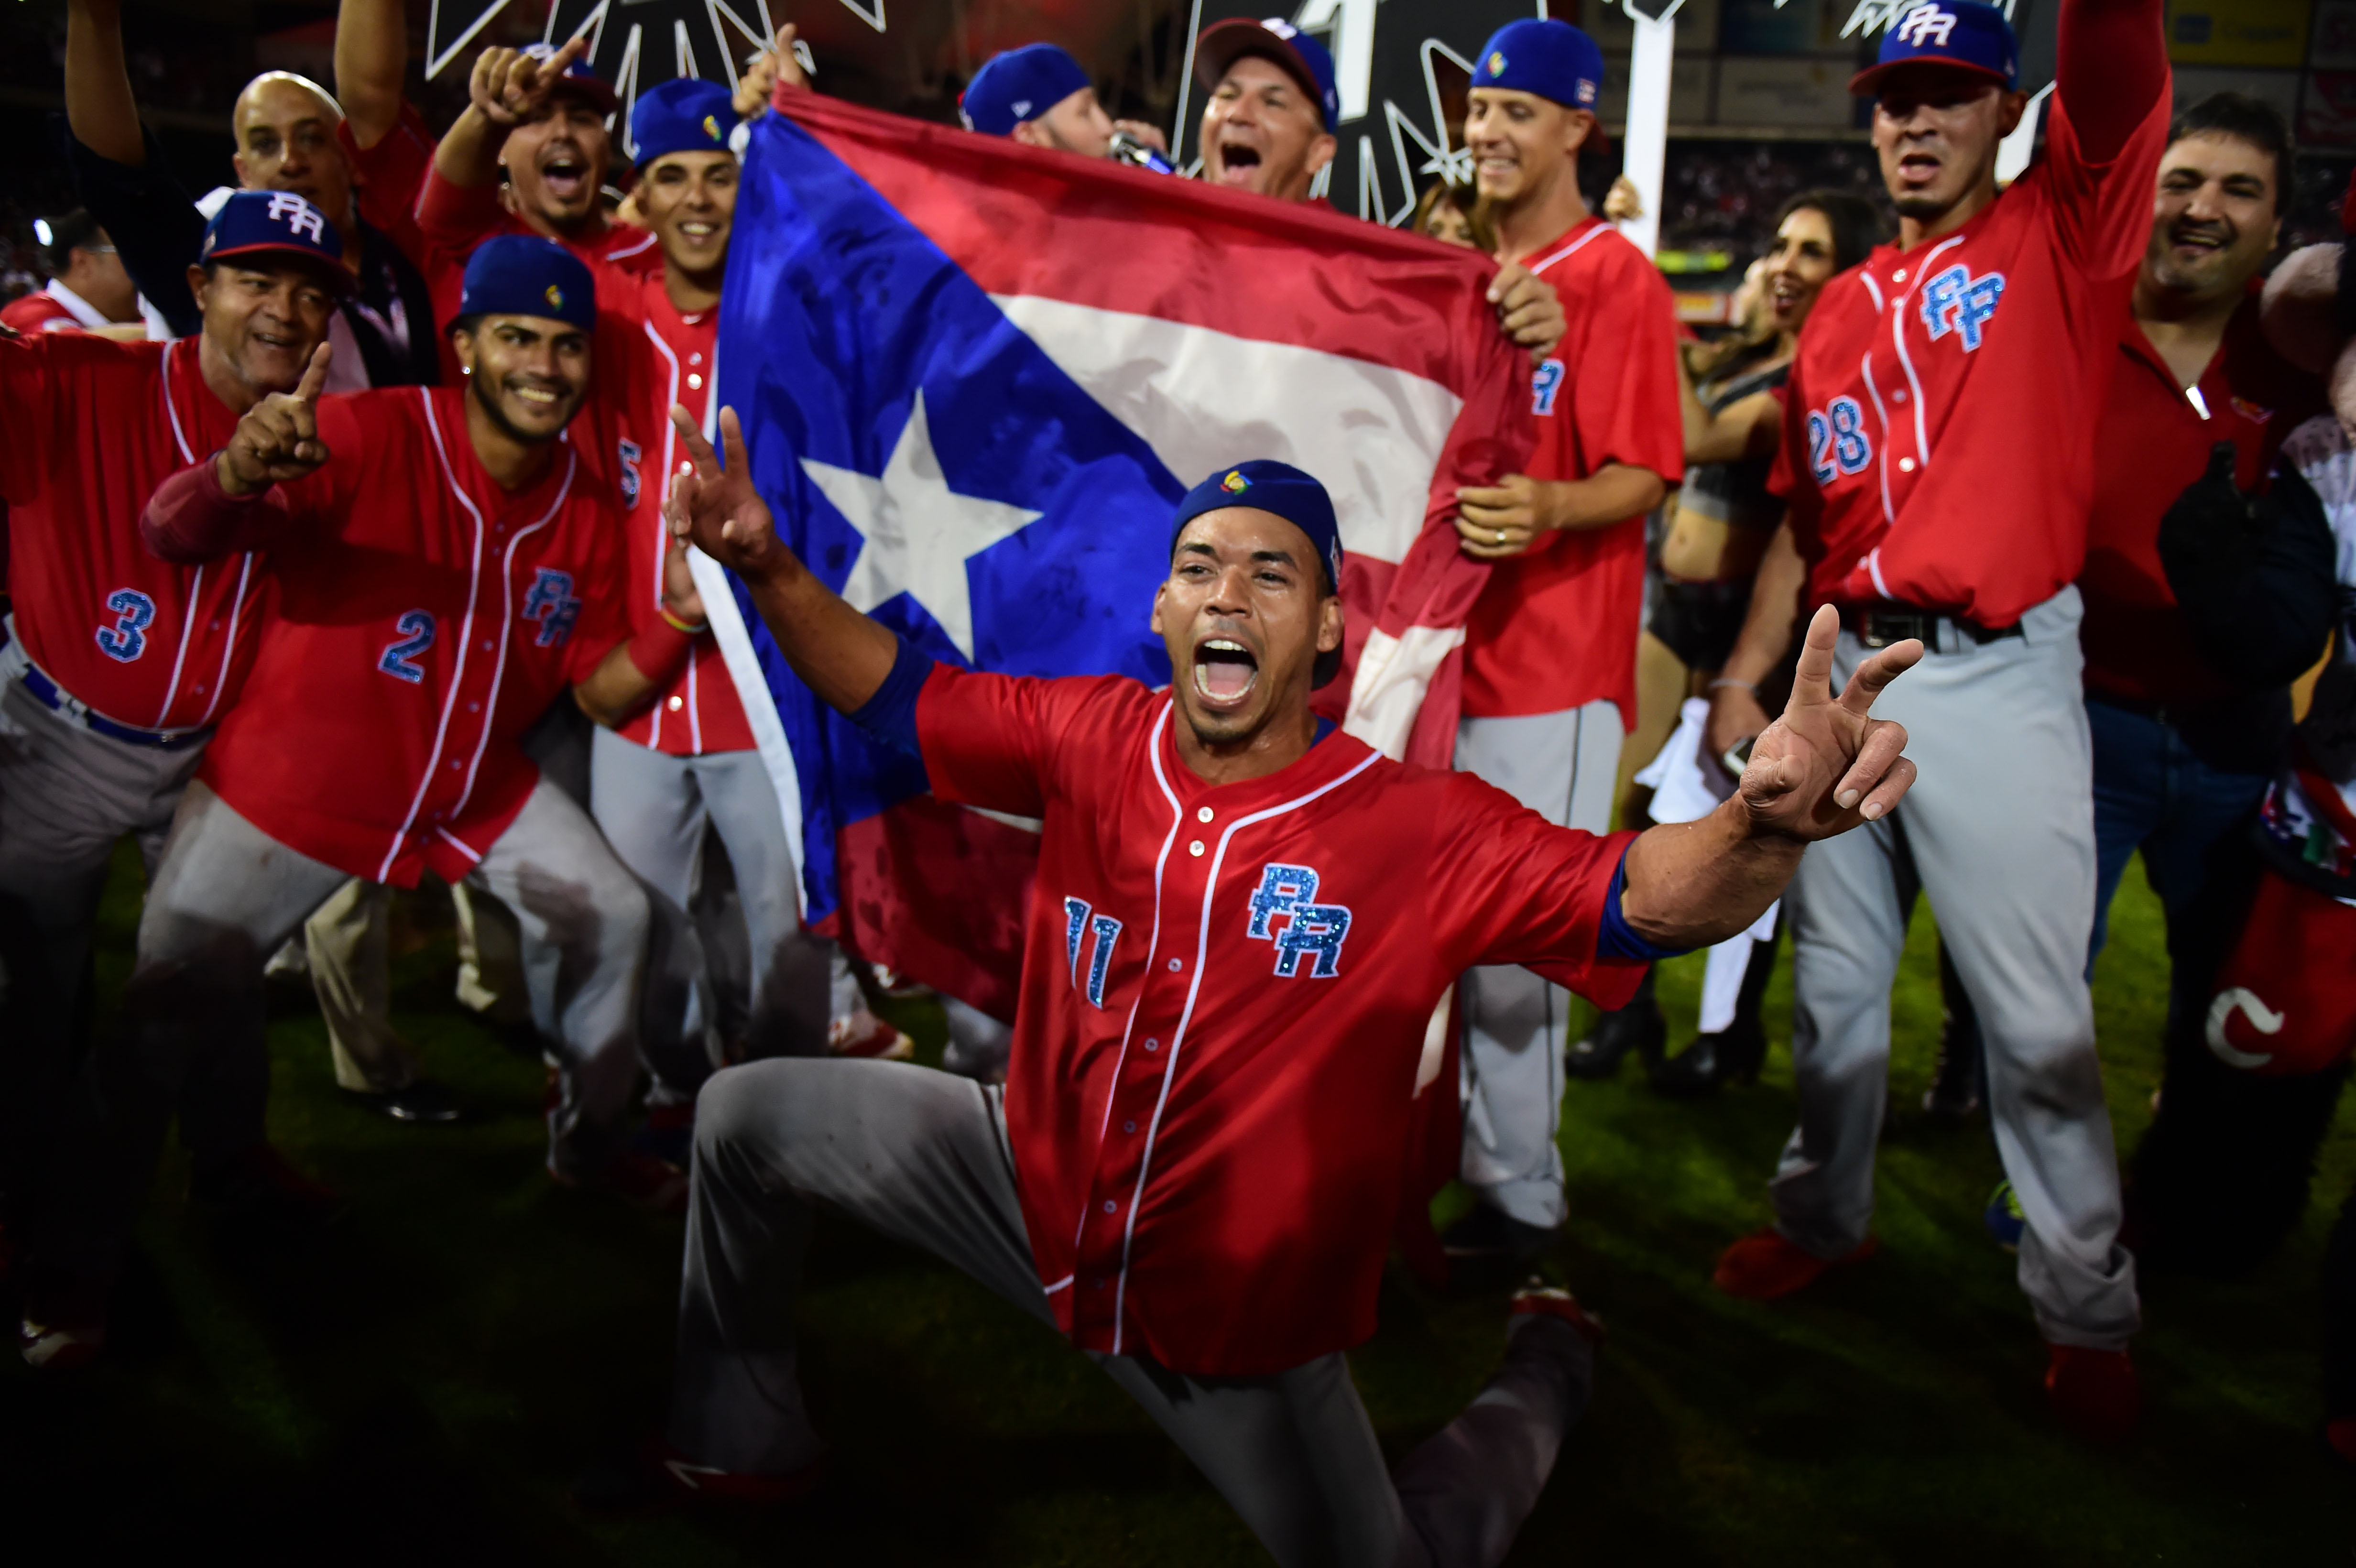 Jugadores de los Criollos de Caguas puertorriqueños celebran tras ganarle 1-0 a las Águilas de Mexicali mexicanas en la final de la Serie del Caribe en Culiacán. (Crédito: RONALDO SCHEMIDT/AFP/Getty Images)